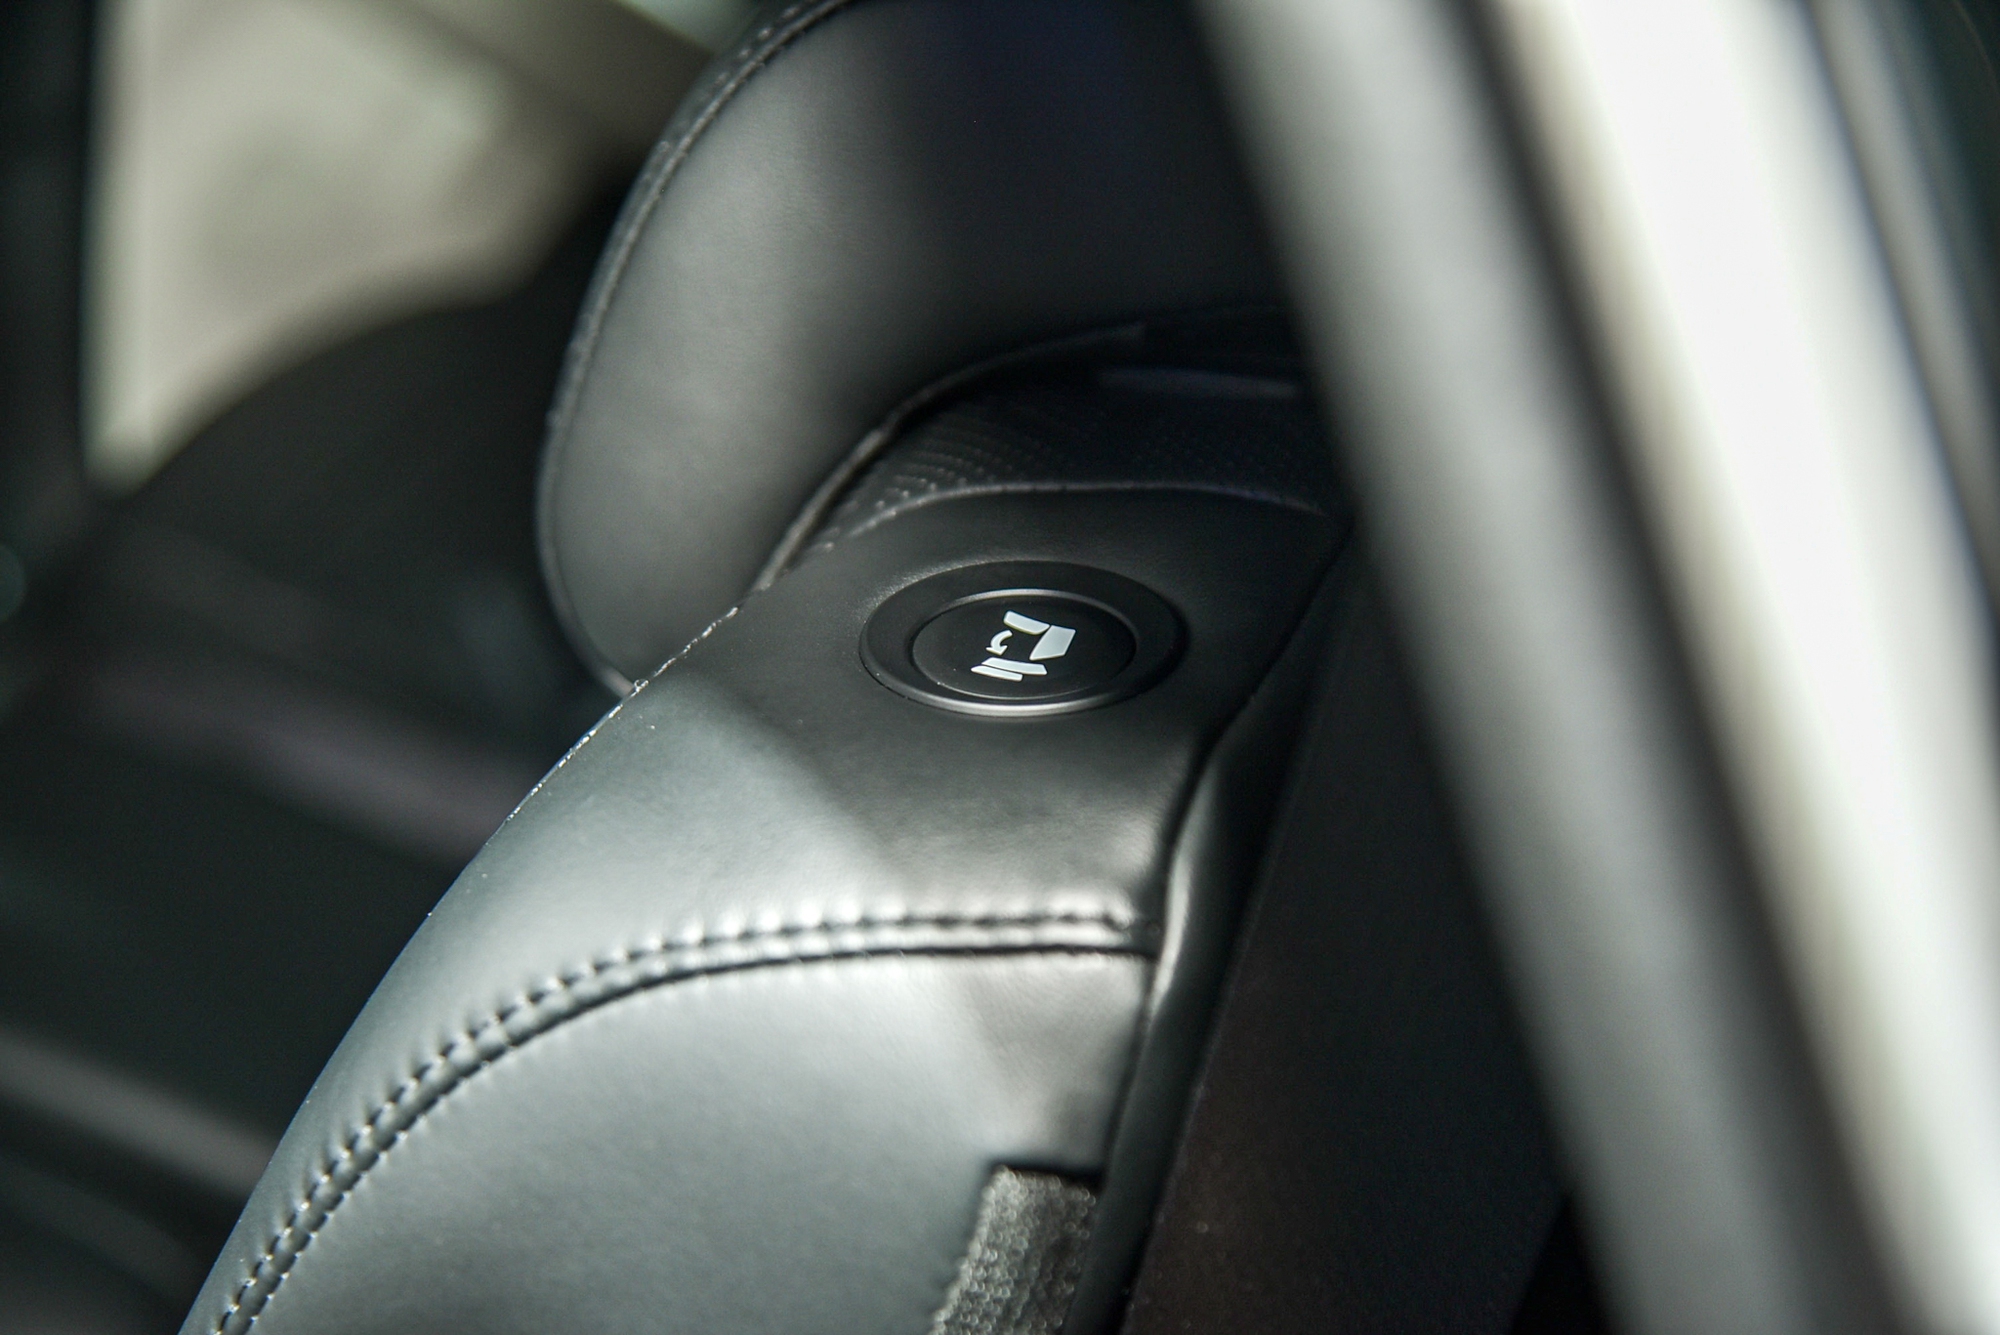 Chi tiết Kia Carens phiên bản xăng 1.5 Luxury: Giá 699 triệu đồng, thiếu nhiều trang bị so với phiên bản cao hơn - Ảnh 14.